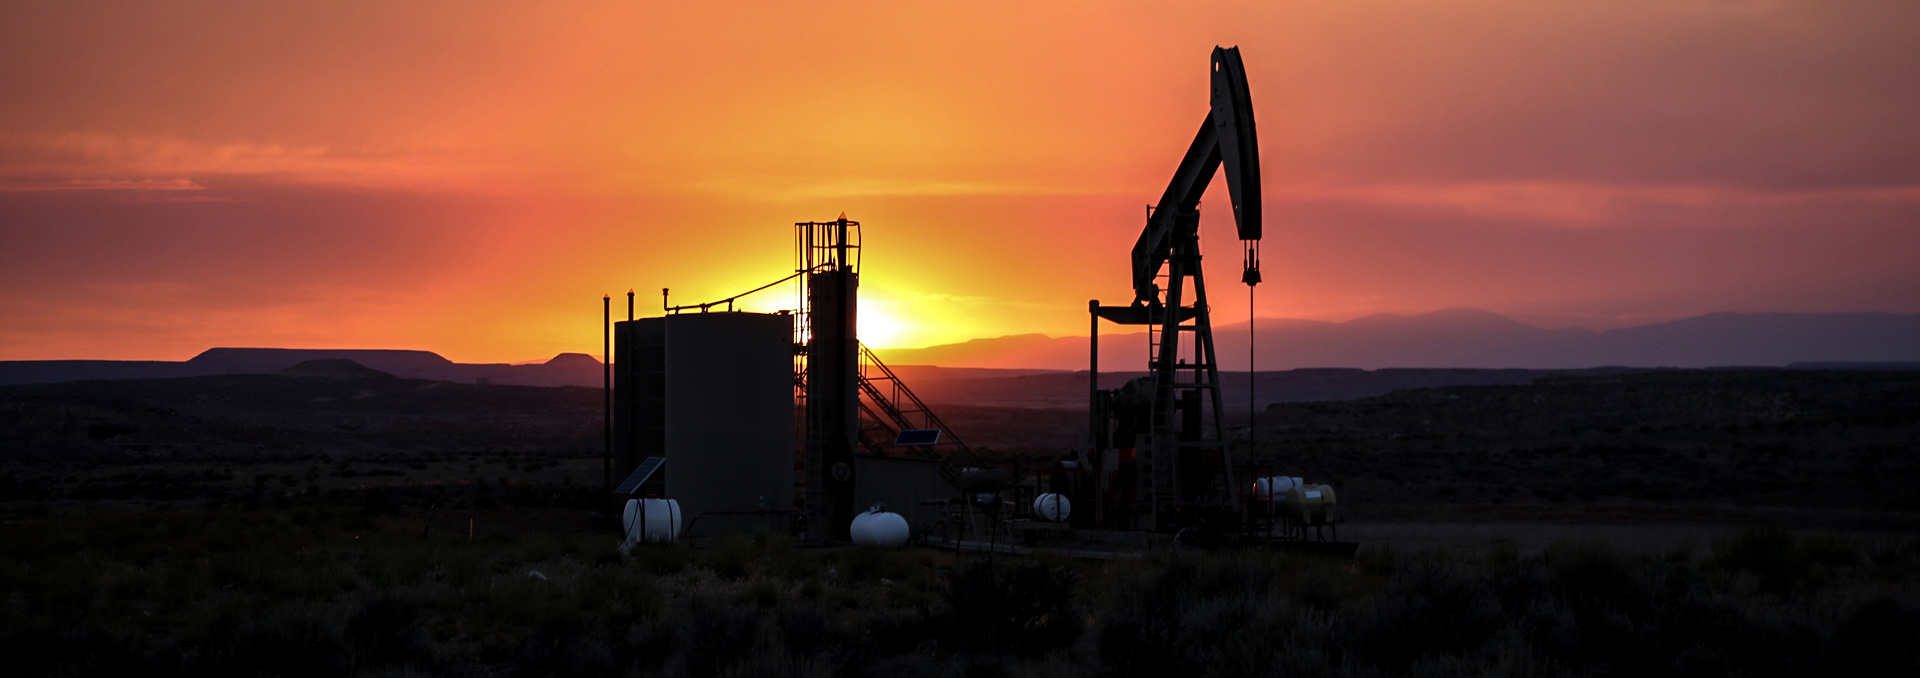 Sunset and pump jack in Utah's Uinta Basin